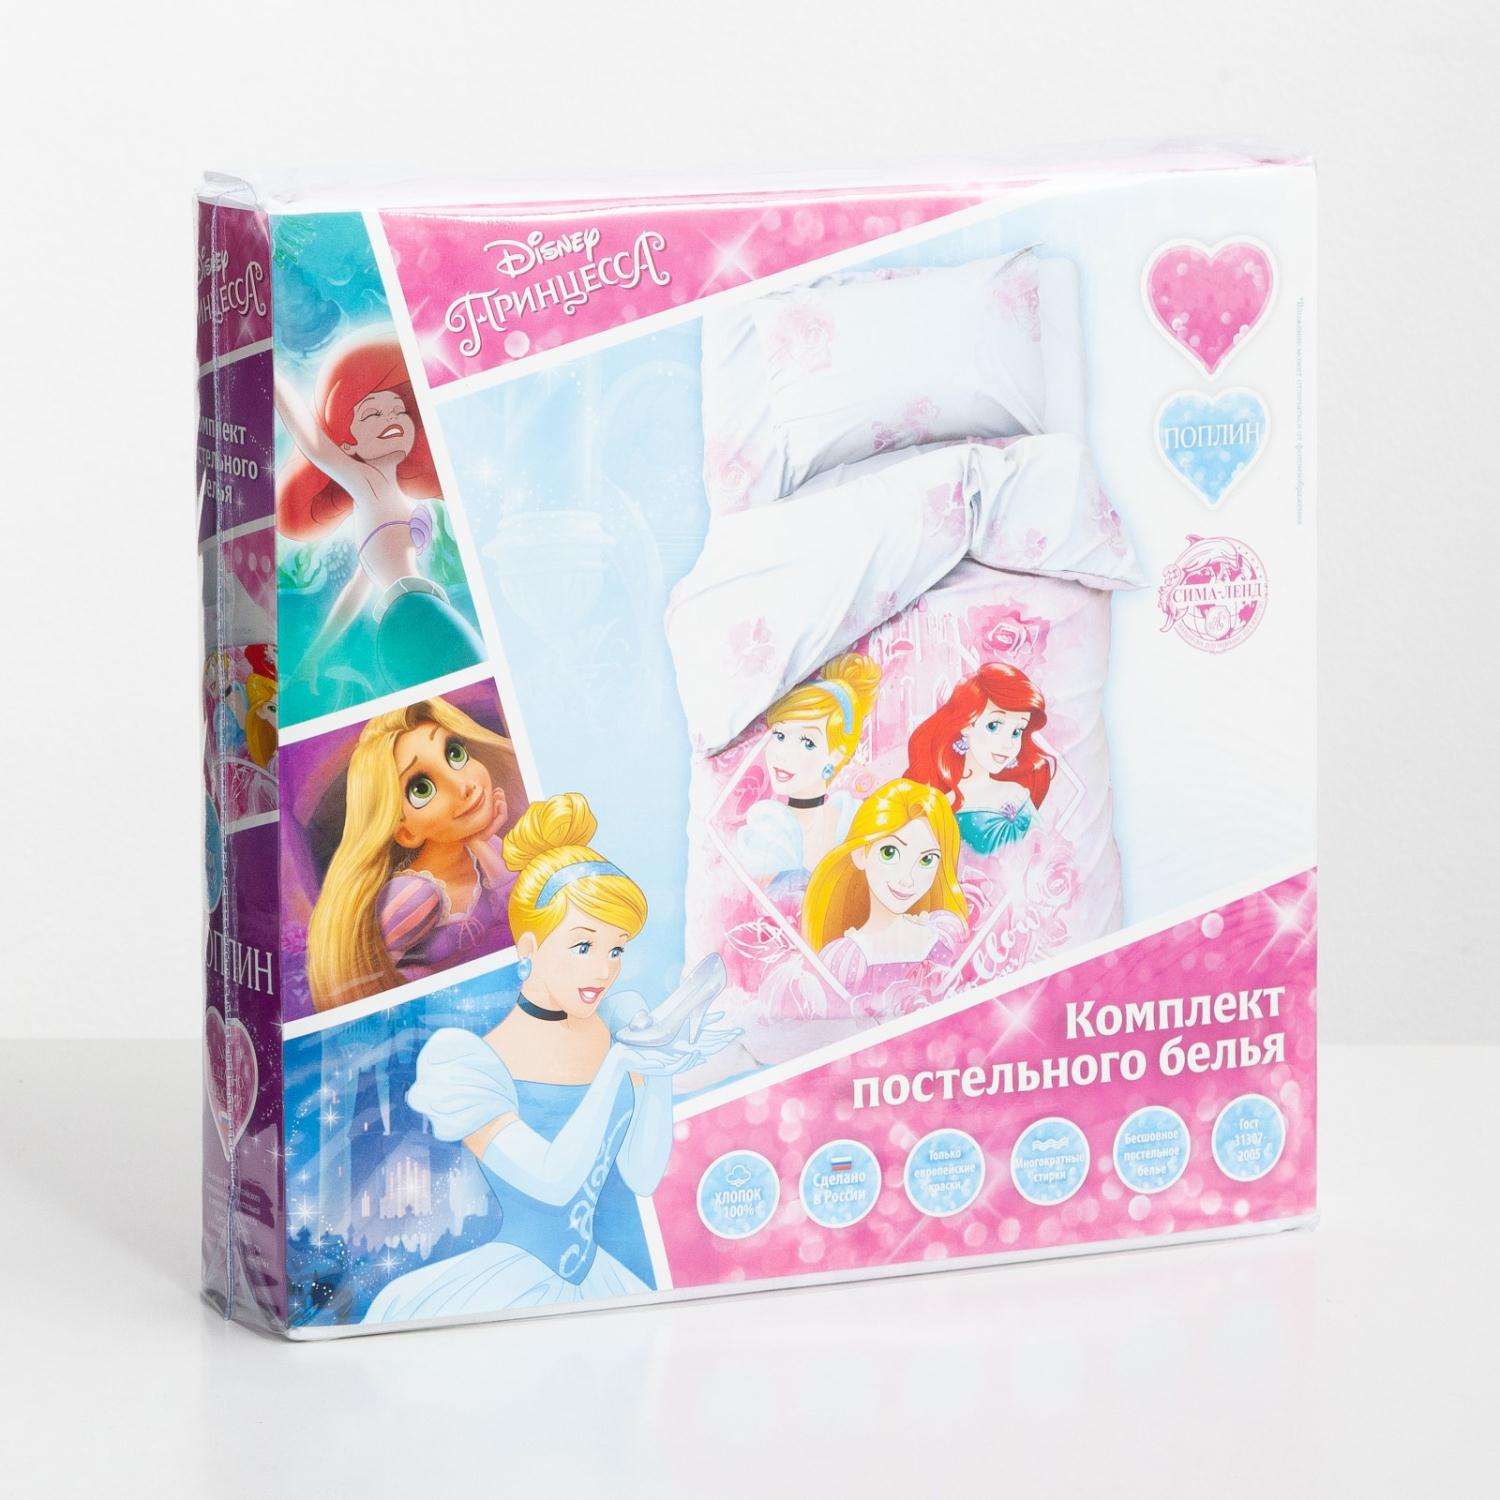 Комплект постельного белья Disney Follow your heart Принцессы - фото 2